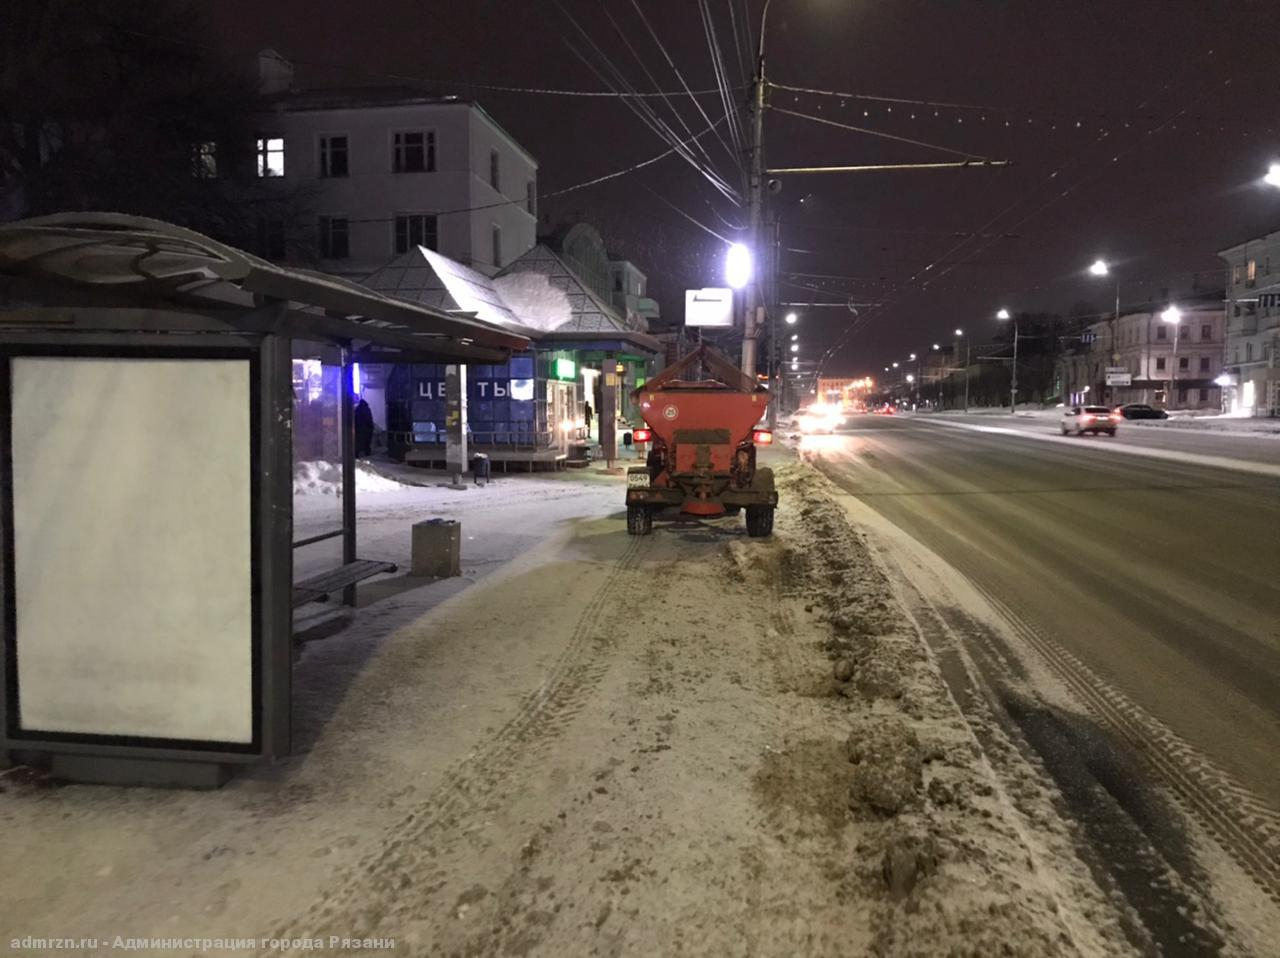 Будут вывозить снег: рязанцев попросили убрать свои автомобили в ночь на 1 марта